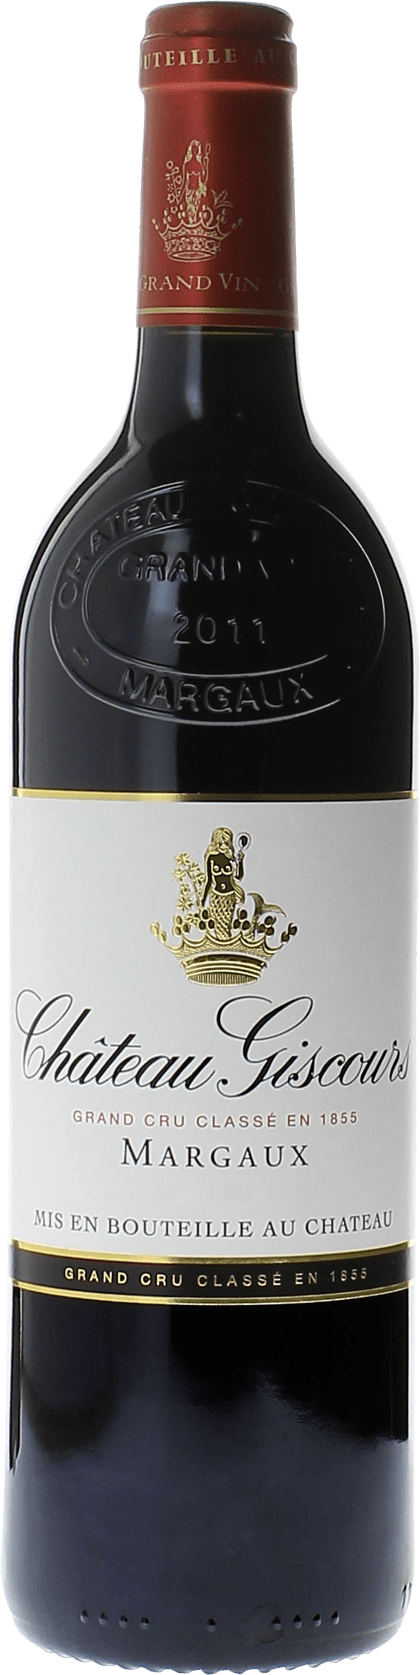 Giscours 2015 3me Grand cru class Margaux, Bordeaux rouge